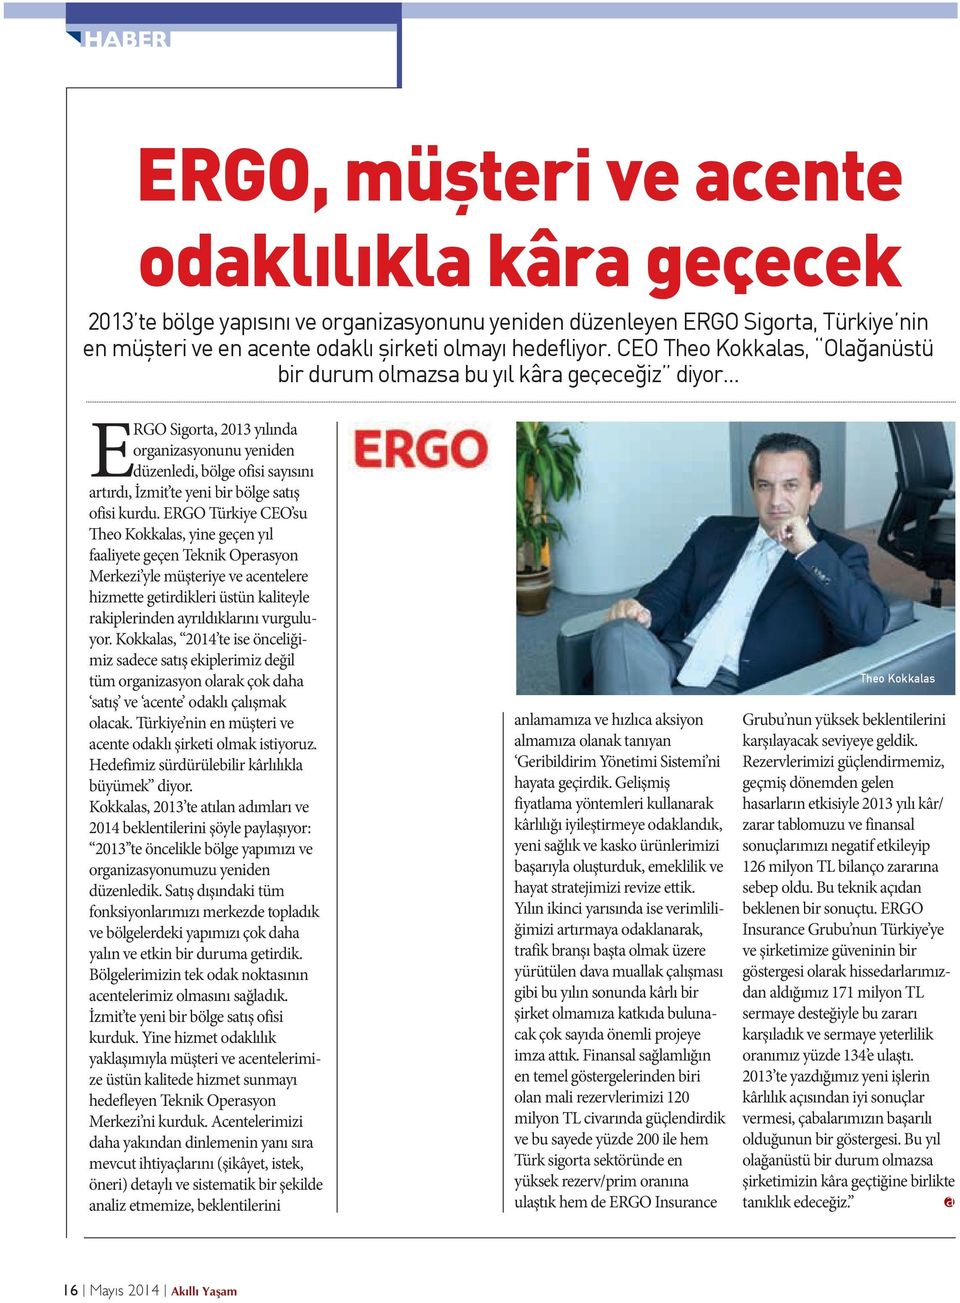 .. ERGO Sigorta, 2013 yılında organizasyonunu yeniden düzenledi, bölge ofisi sayısını artırdı, İzmit te yeni bir bölge satış ofisi kurdu.